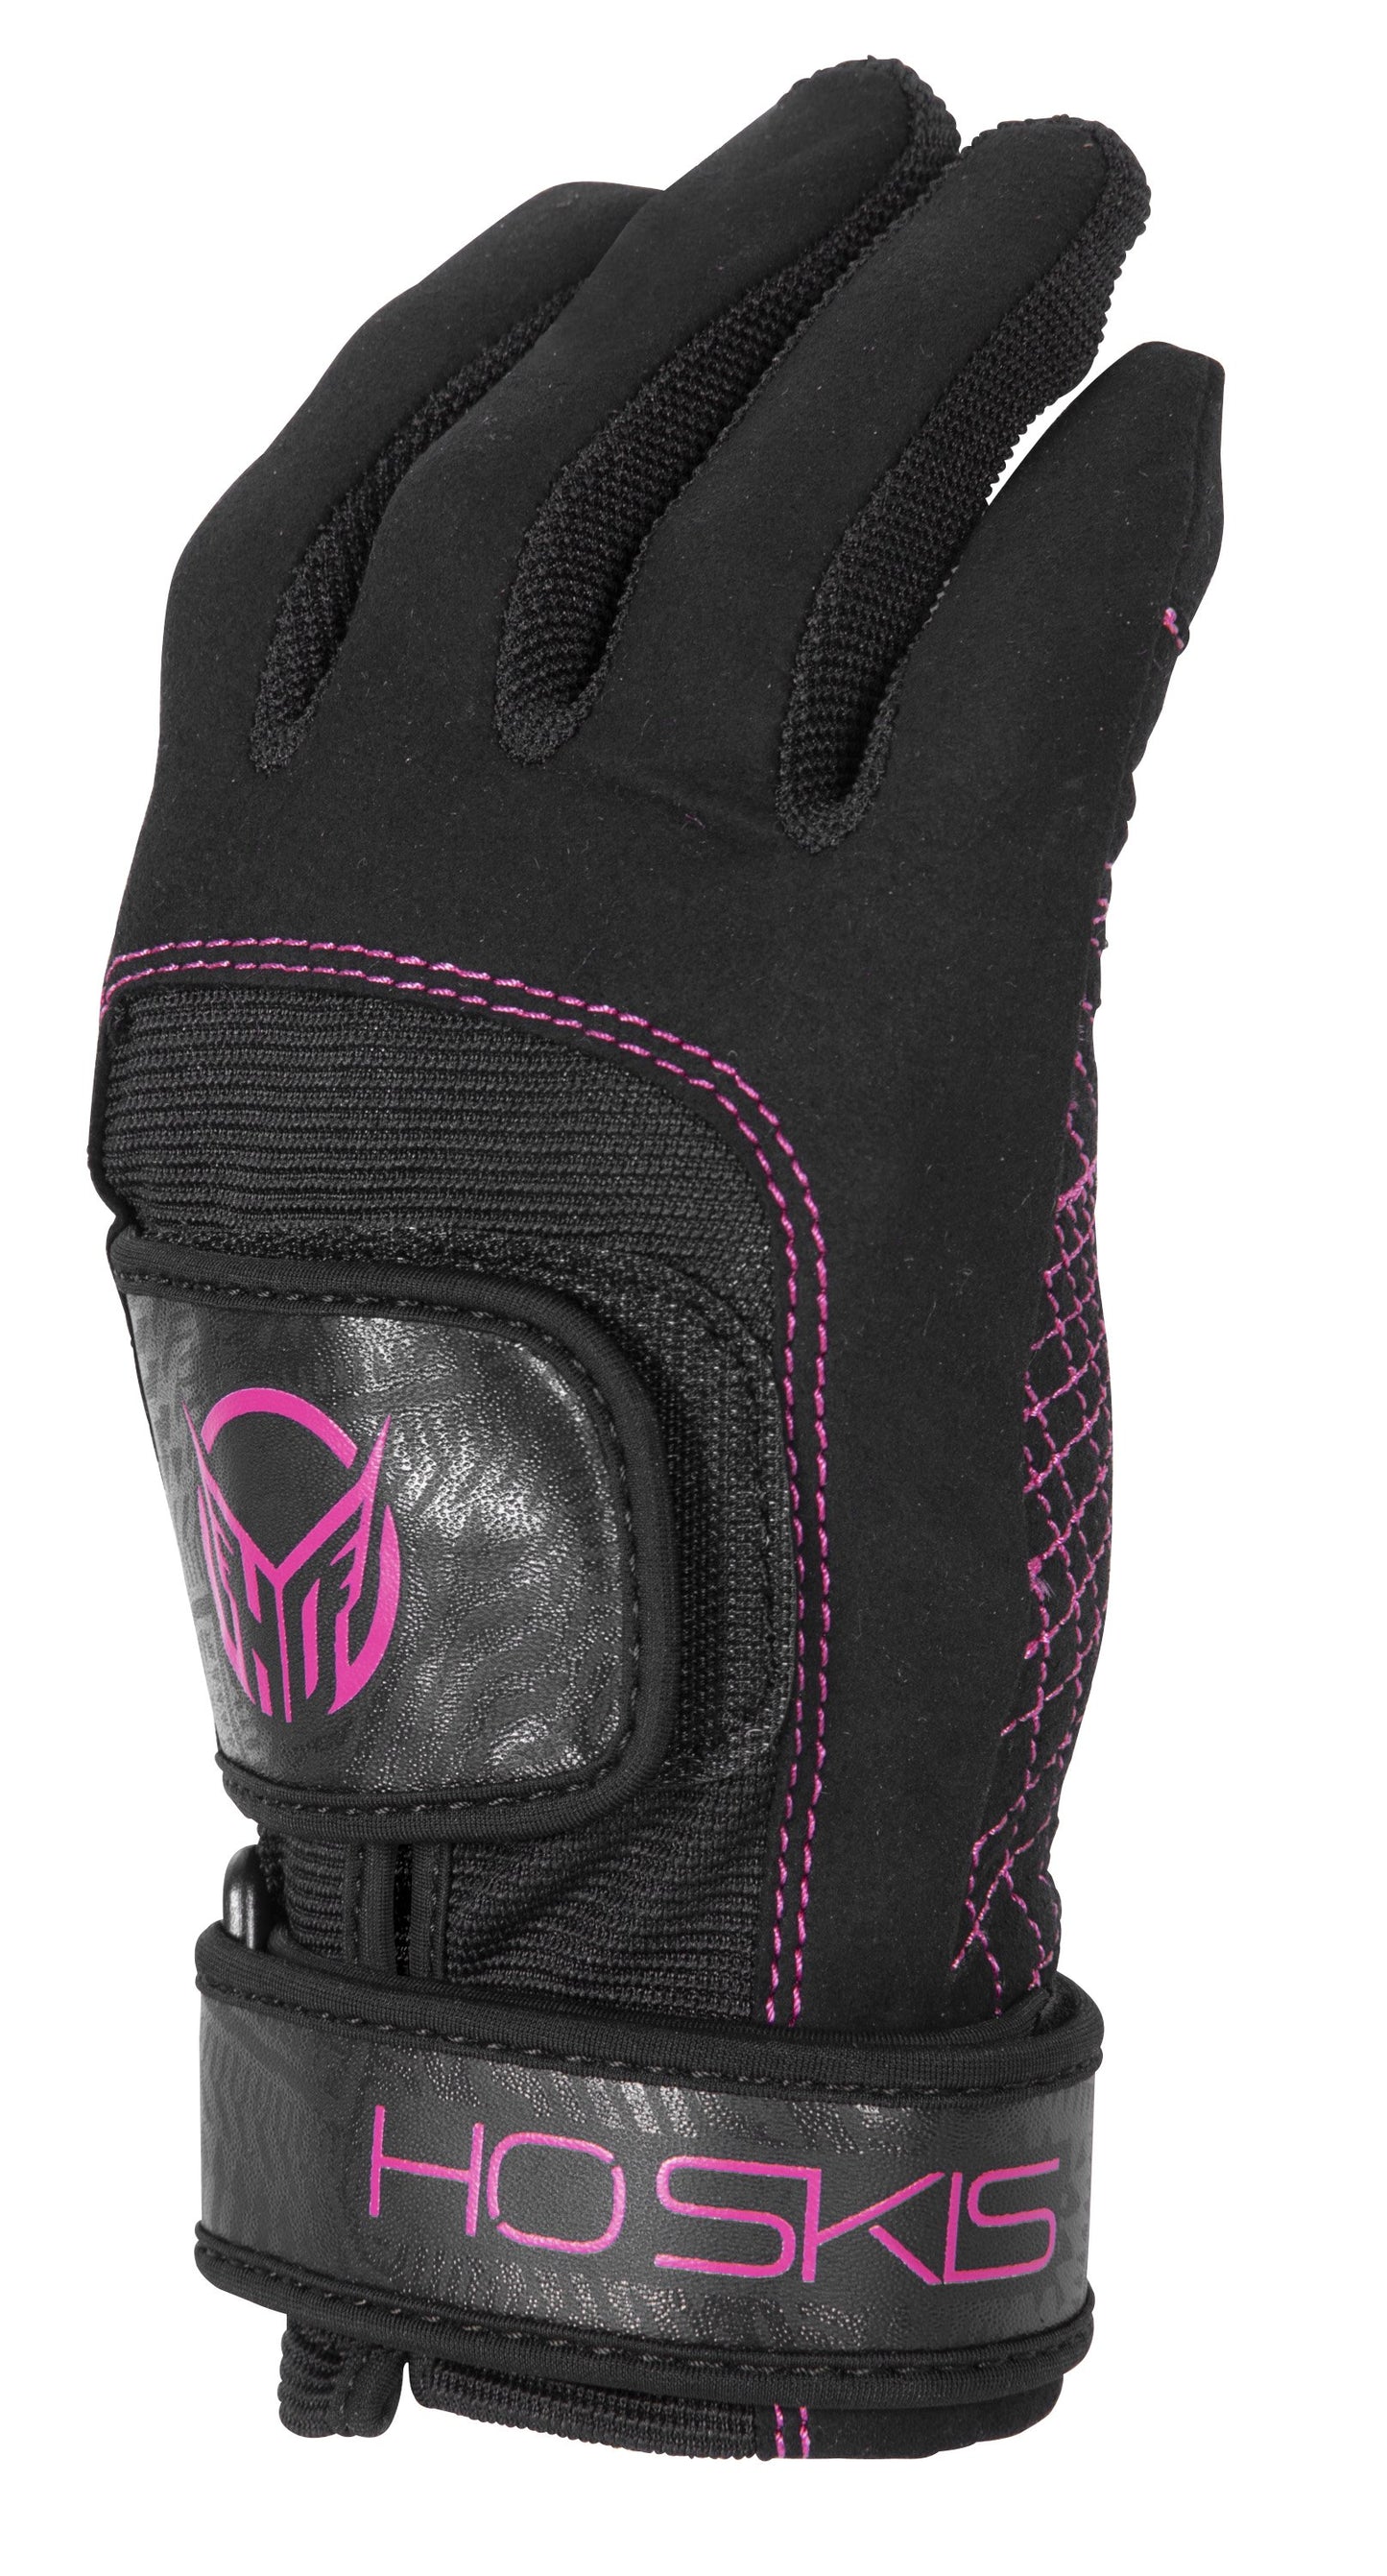 Wmn's Pro Grip Glove